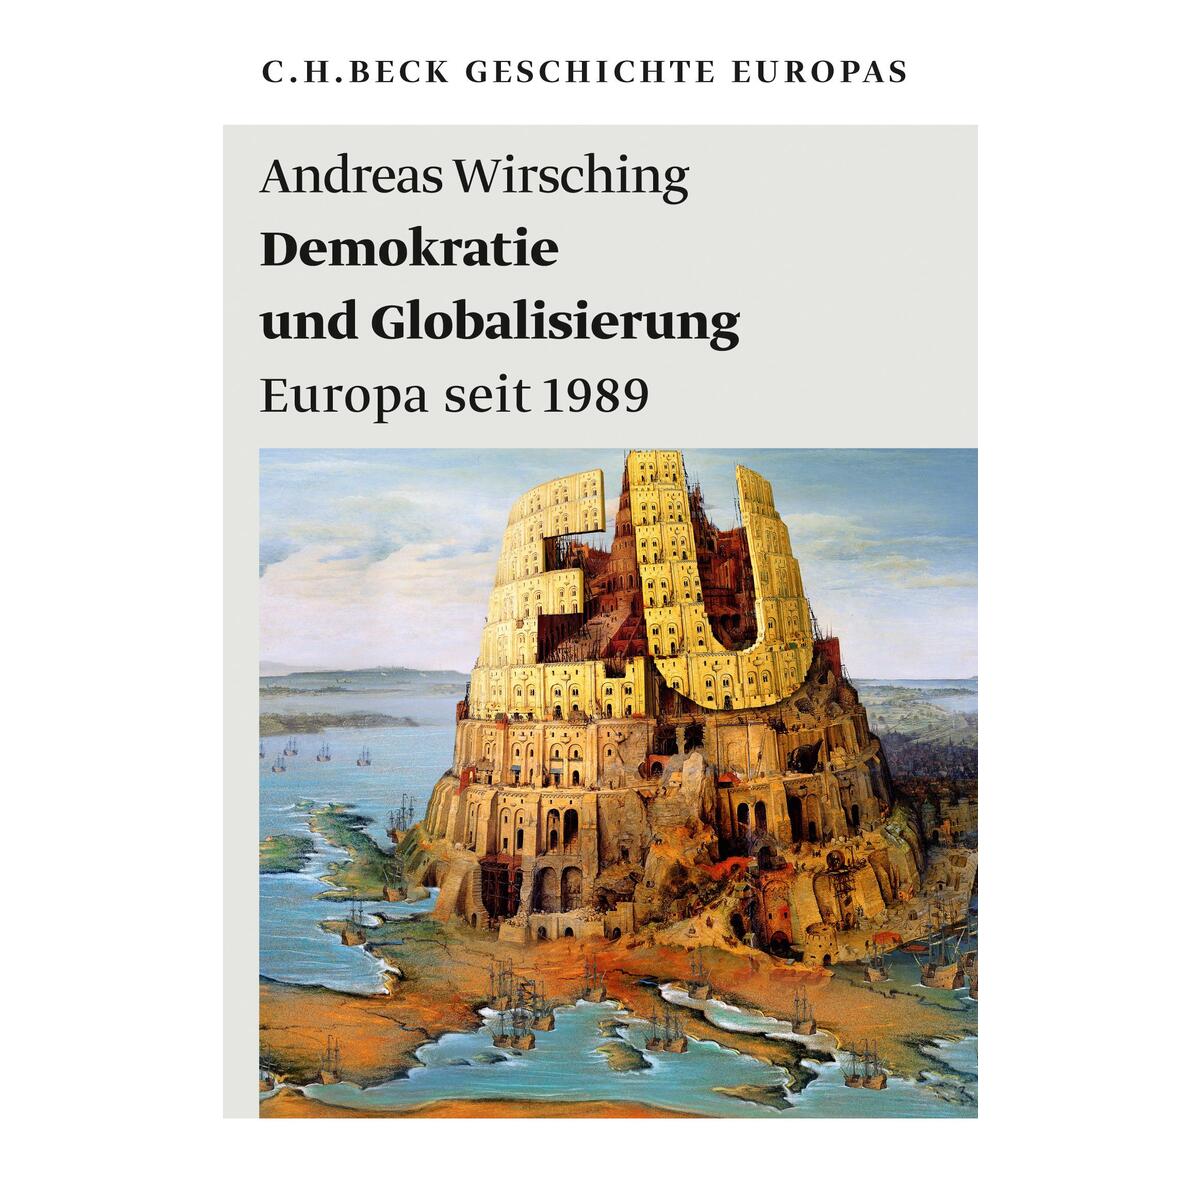 Demokratie und Globalisierung von C.H. Beck